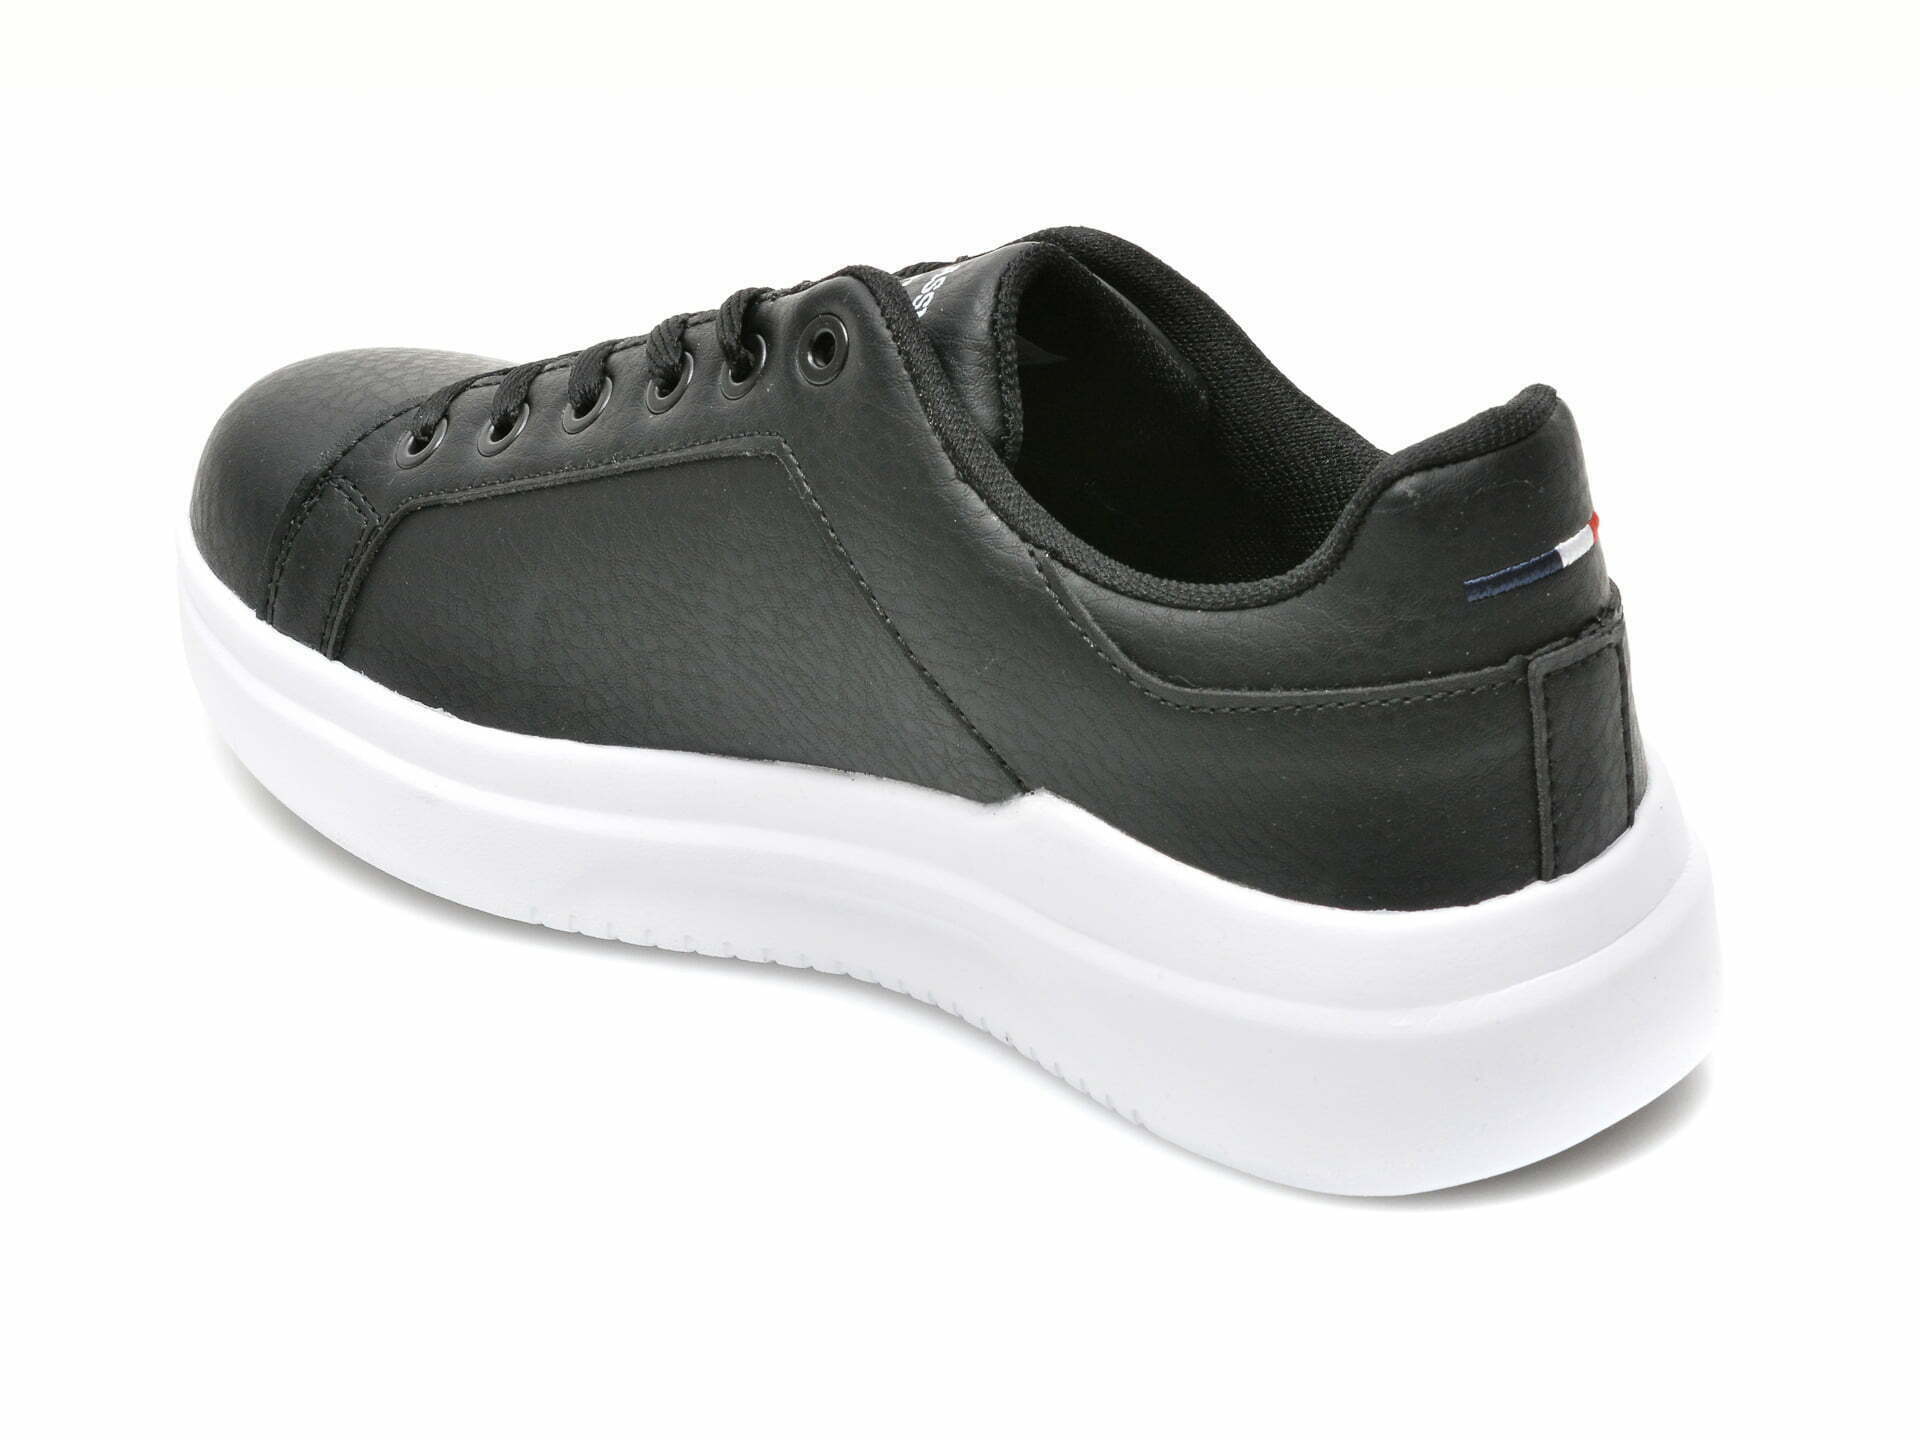 Comandă Încălțăminte Damă, la Reducere  Pantofi sport US POLO ASSN negri, CAMEL WMN, din piele ecologica Branduri de top ✓